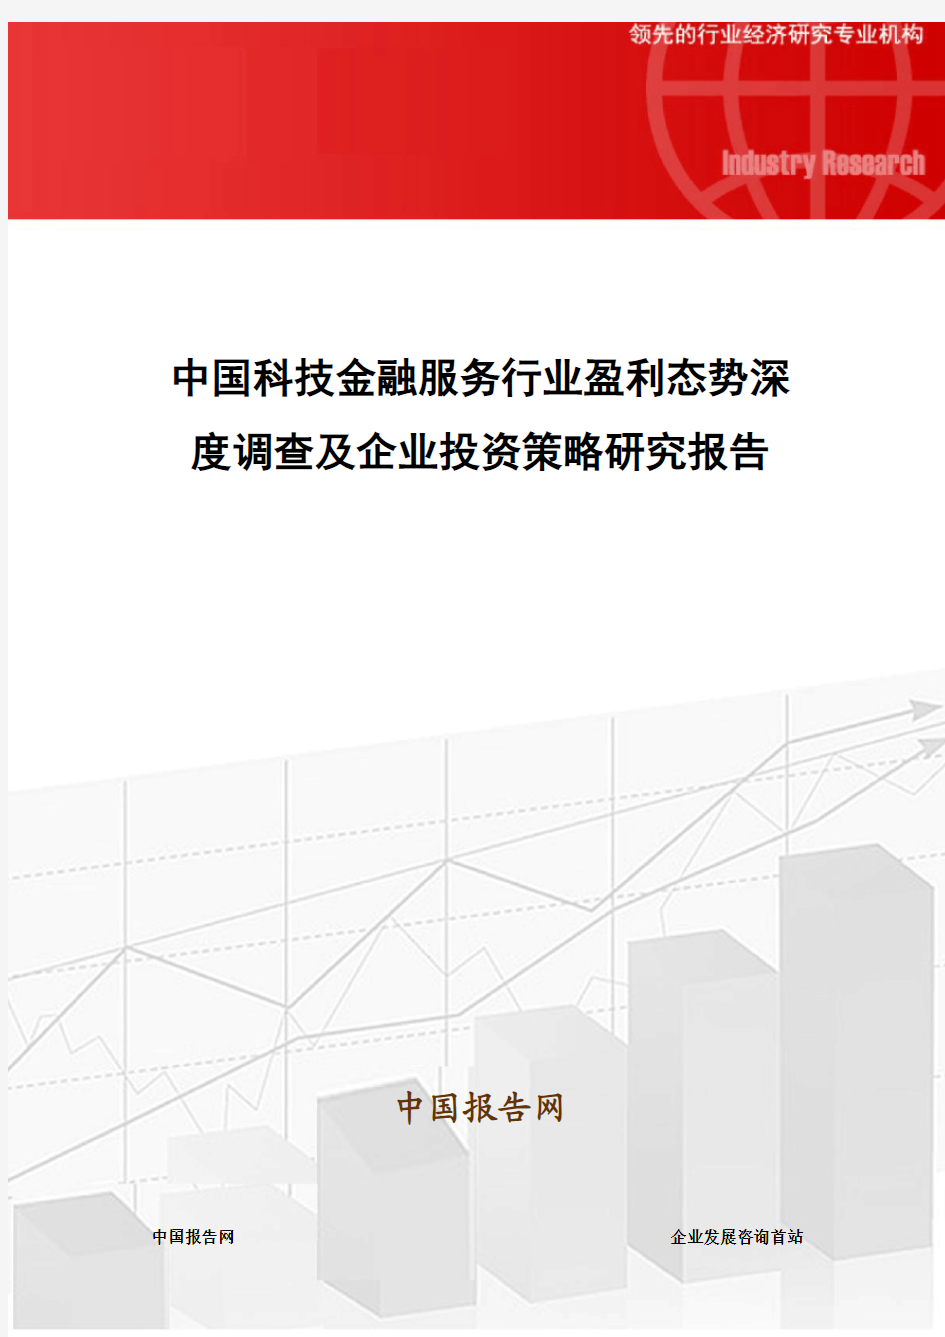 中国科技金融服务行业盈利态势深度调查及企业投资策略研究报告